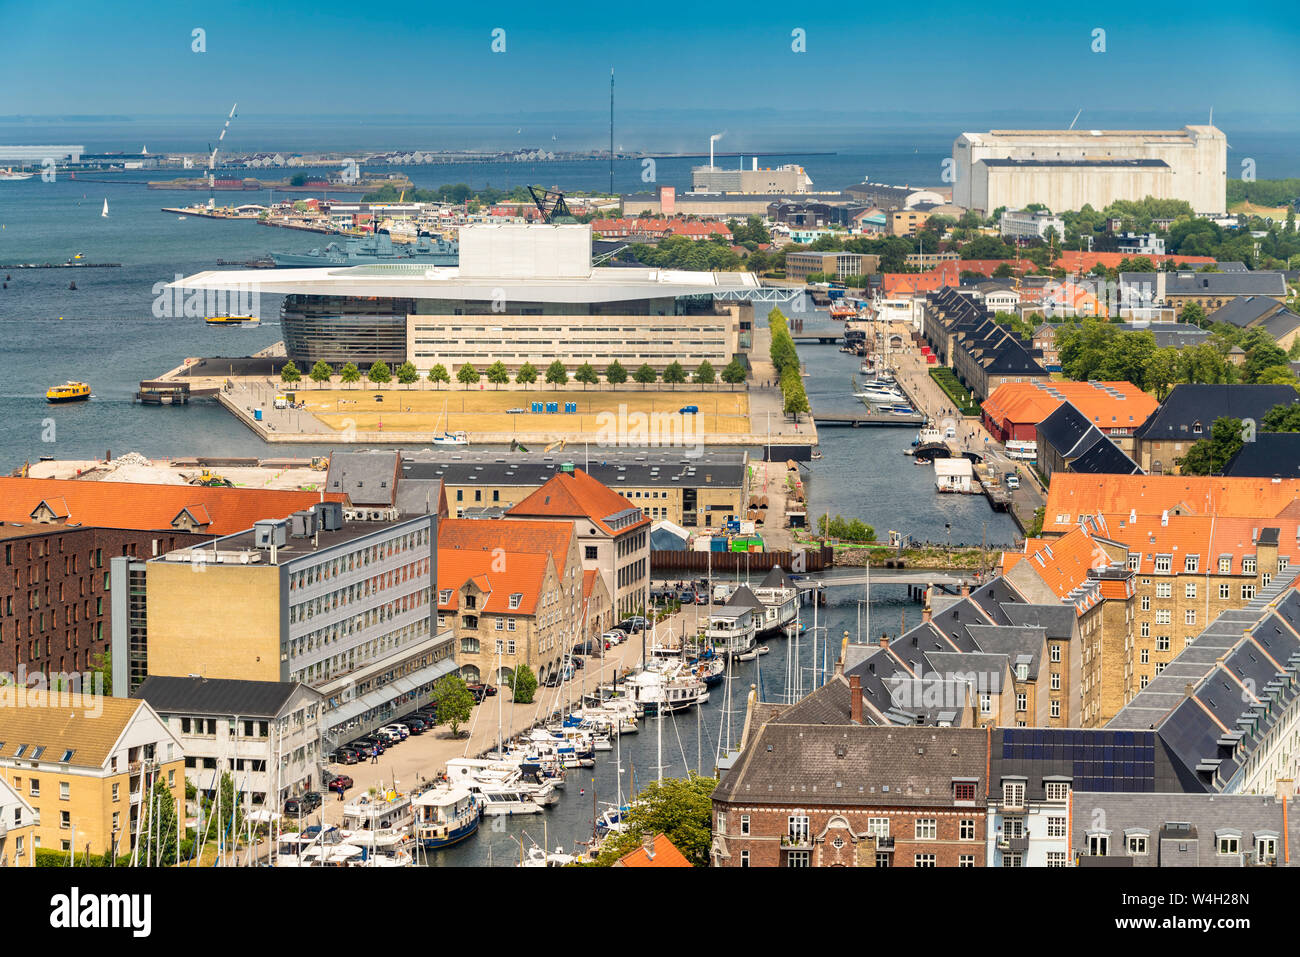 The royal opera house at Christianshavn, Copenhagen, Denmark Stock Photo